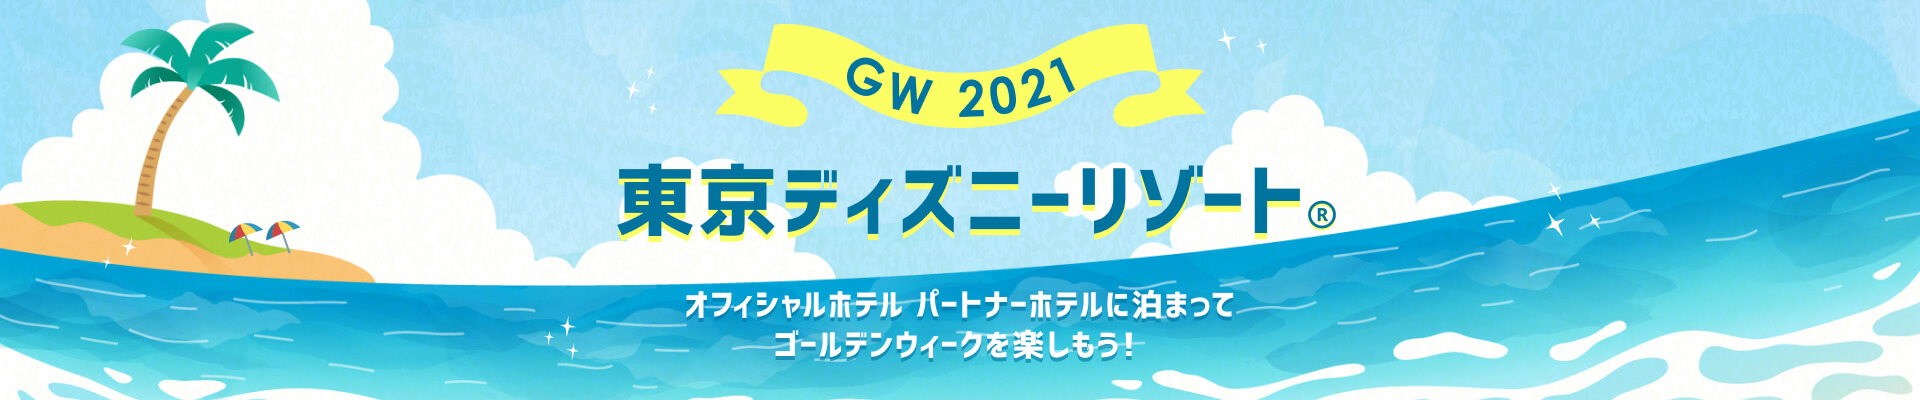 東京ディズニーリゾート Gw旅行を楽しもう 楽天トラベル